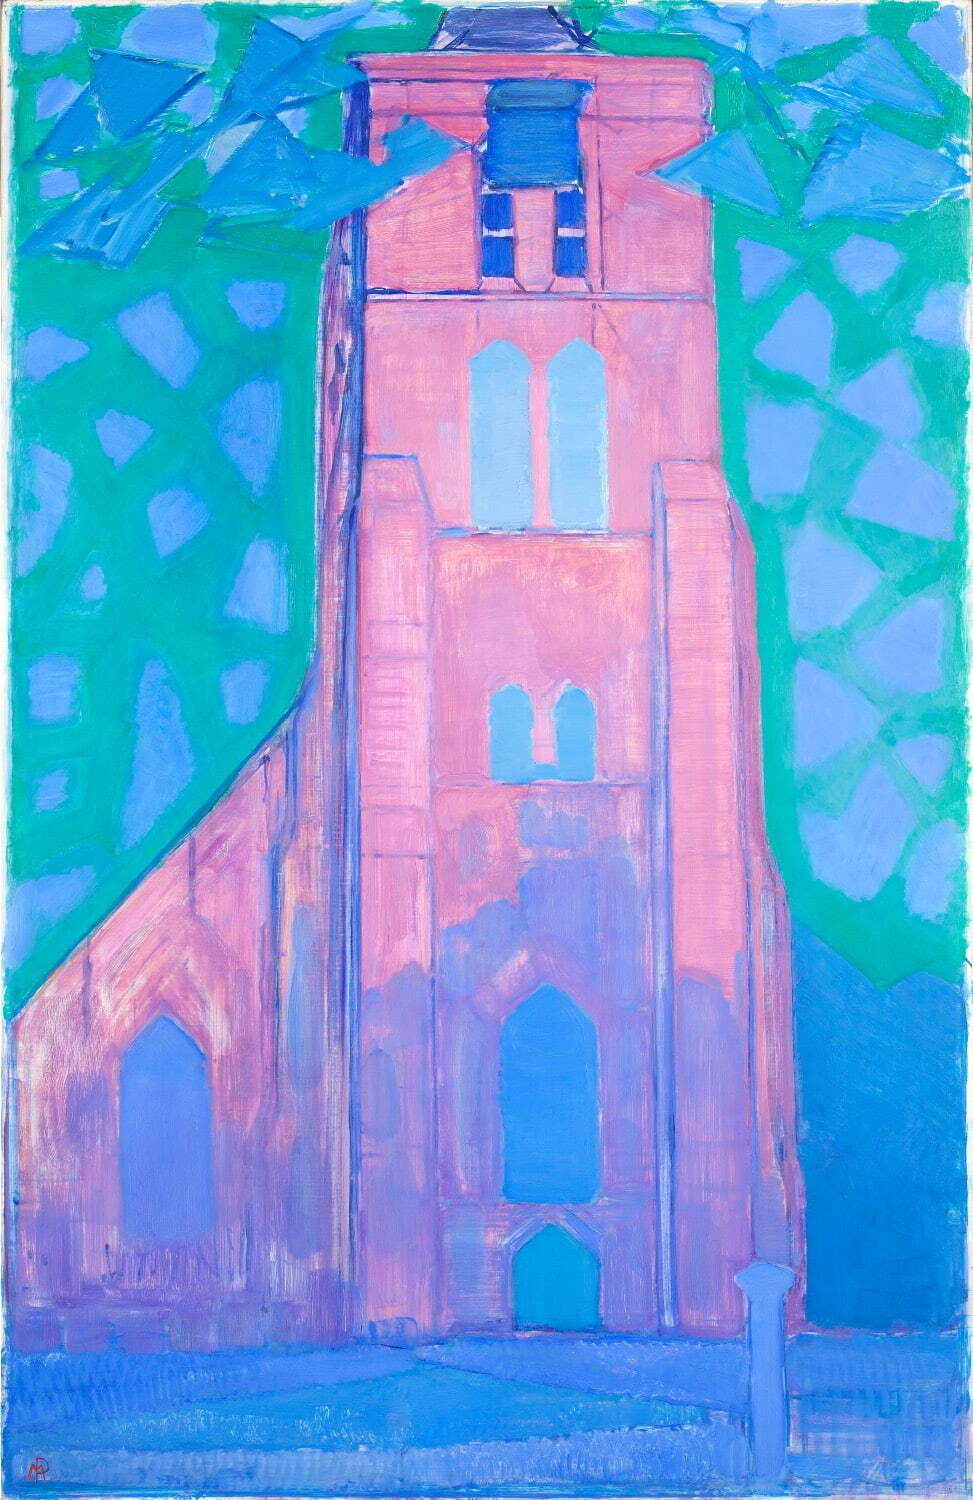 ピート・モンドリアン《ドンブルグの教会塔》1911年 油彩、カンヴァス デン・ハーグ美術館
Kunstmuseum Den Haag